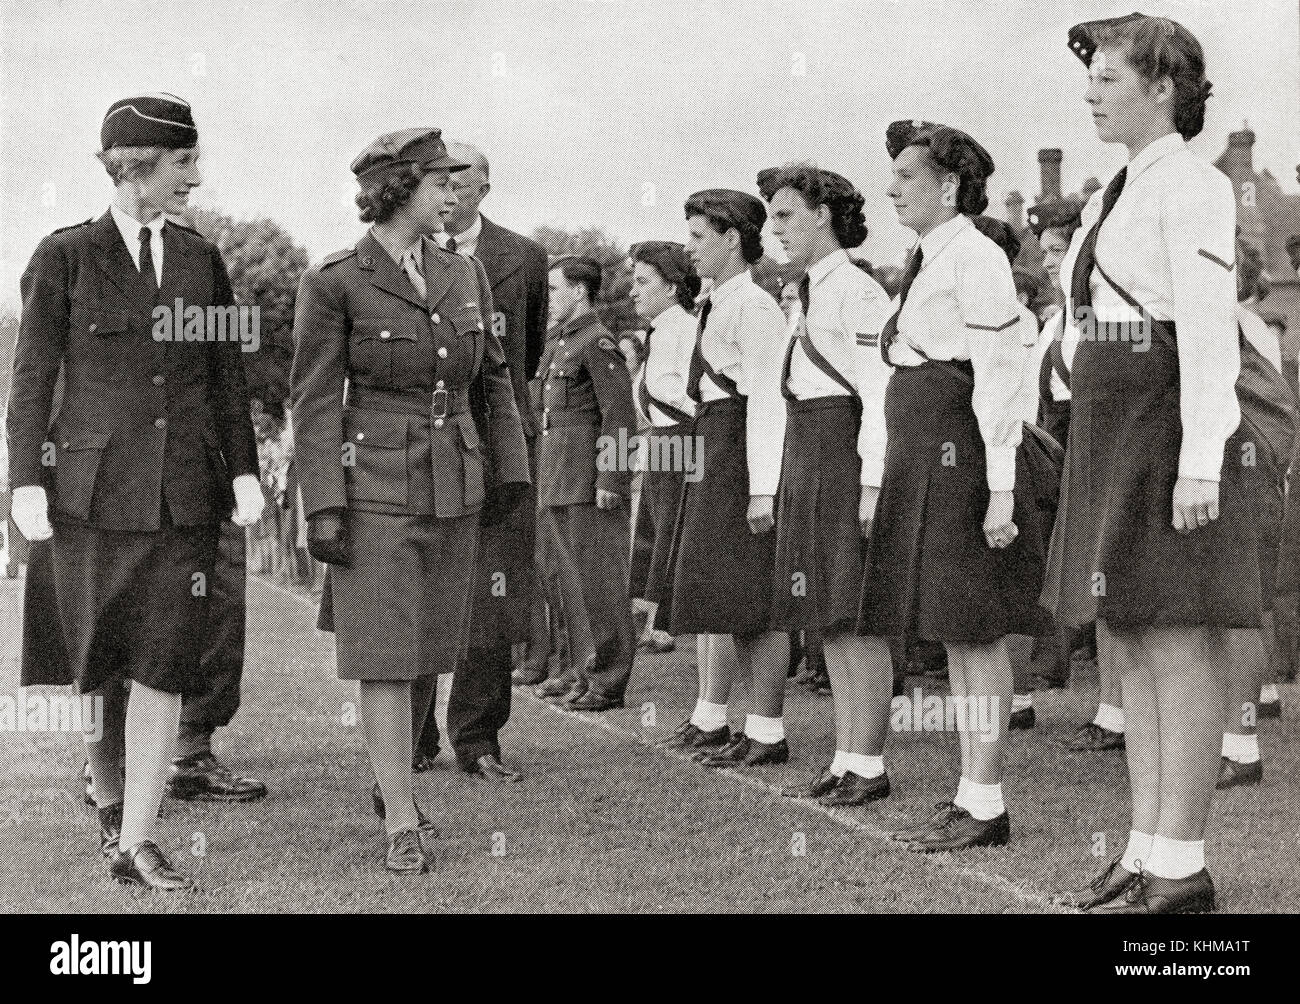 La principessa Elisabetta ispezionando il corpo di addestramento delle ragazze, 1945. Principessa Elisabetta di York, futuro Elisabetta II, 1926 - 2022. Regina del Regno Unito. Foto Stock